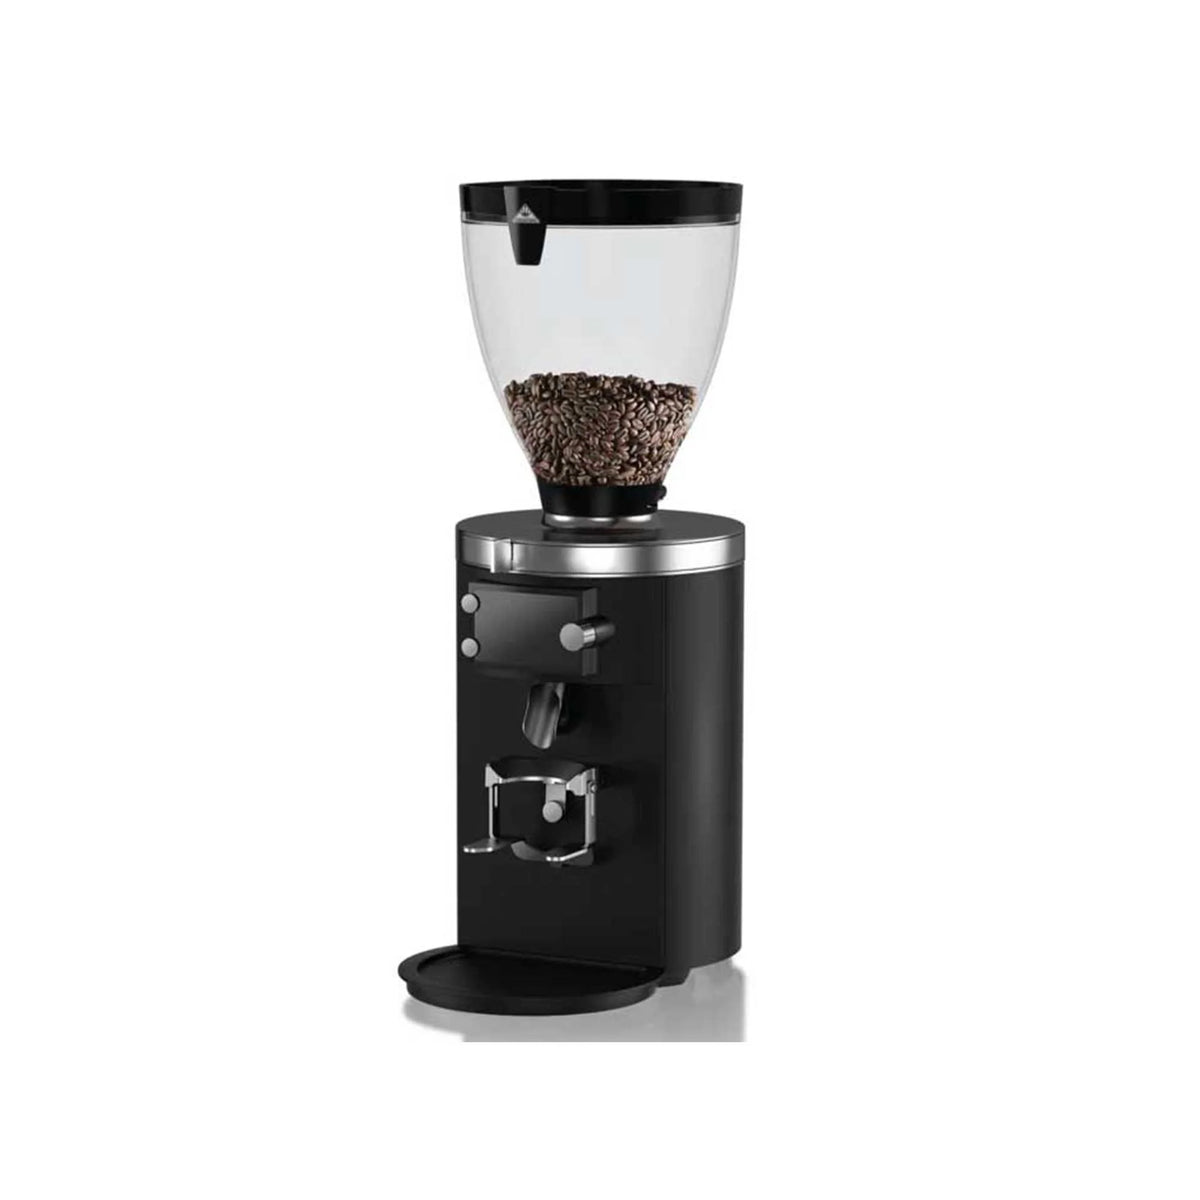 Mahlkonig E80 至尊濃縮咖啡研磨機